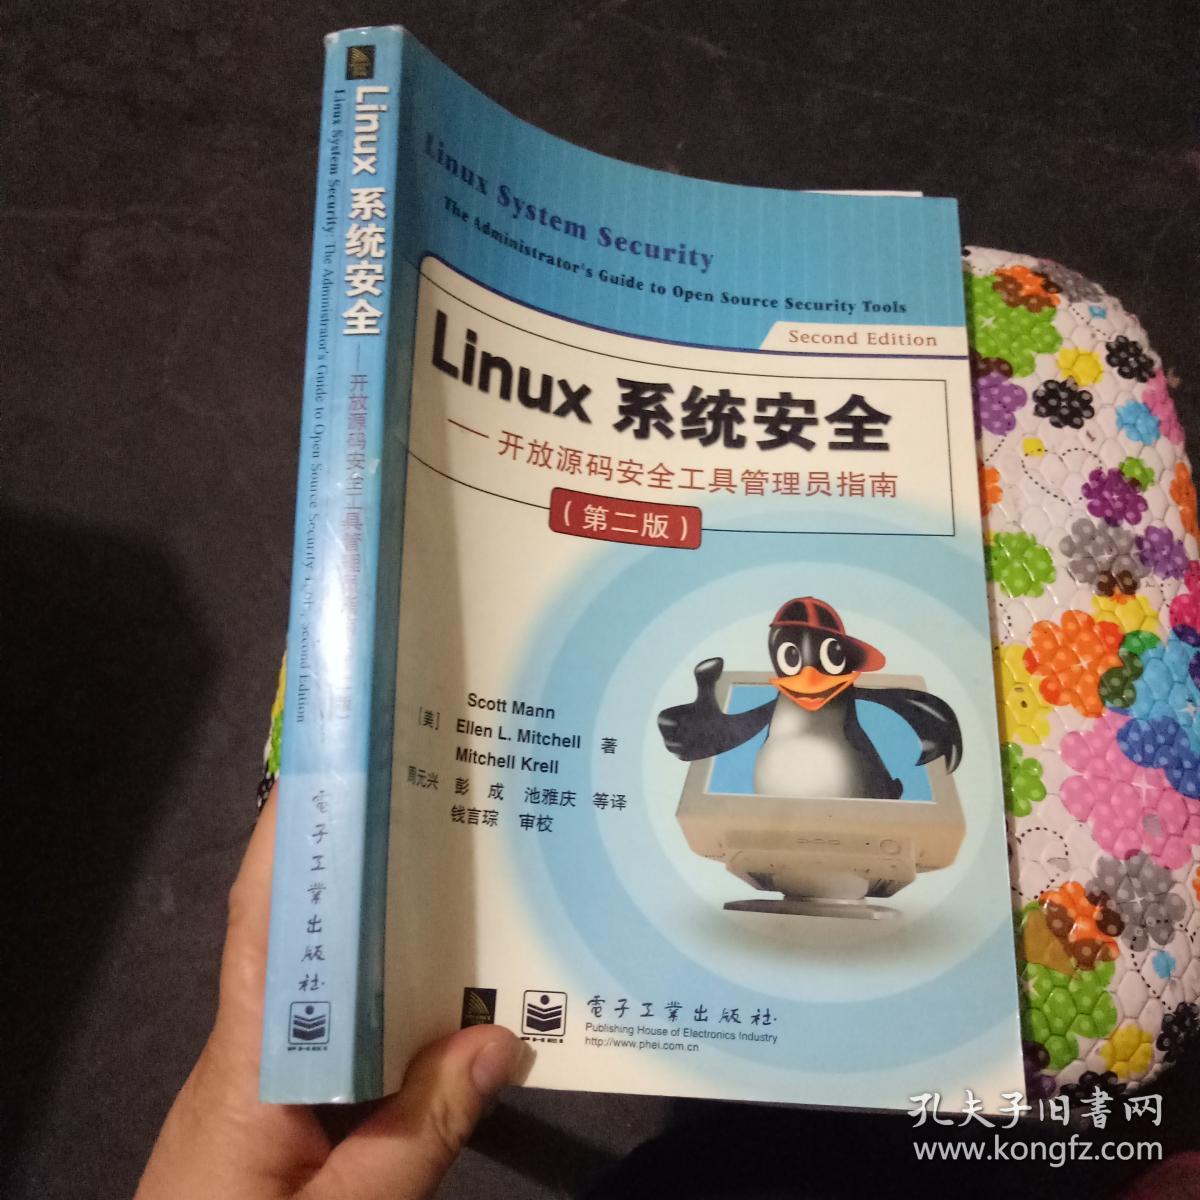 Linux 系统安全 开放源码安全工具管理员指南(